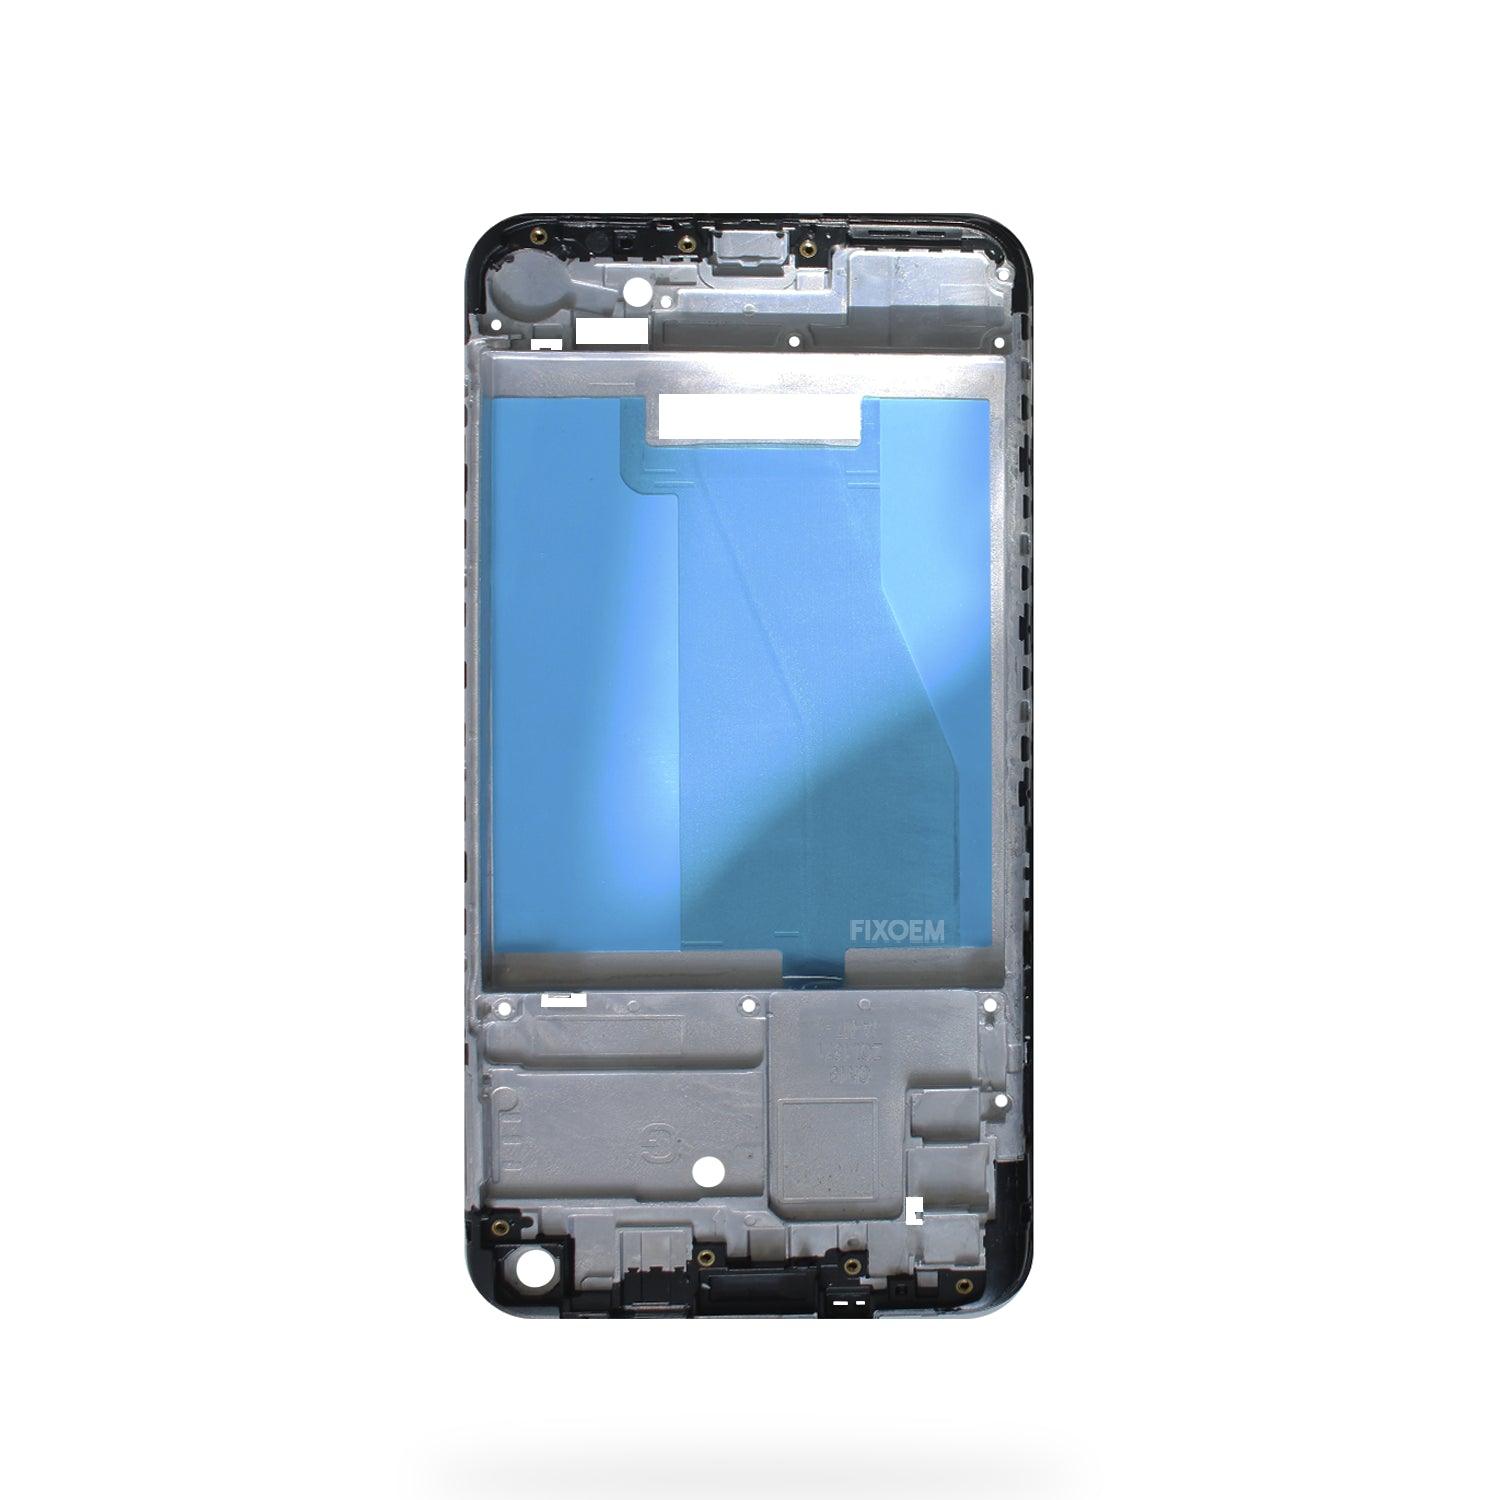 Marco Samsung A11 A115 a solo $ 60.00 Refaccion y puestos celulares, refurbish y microelectronica.- FixOEM